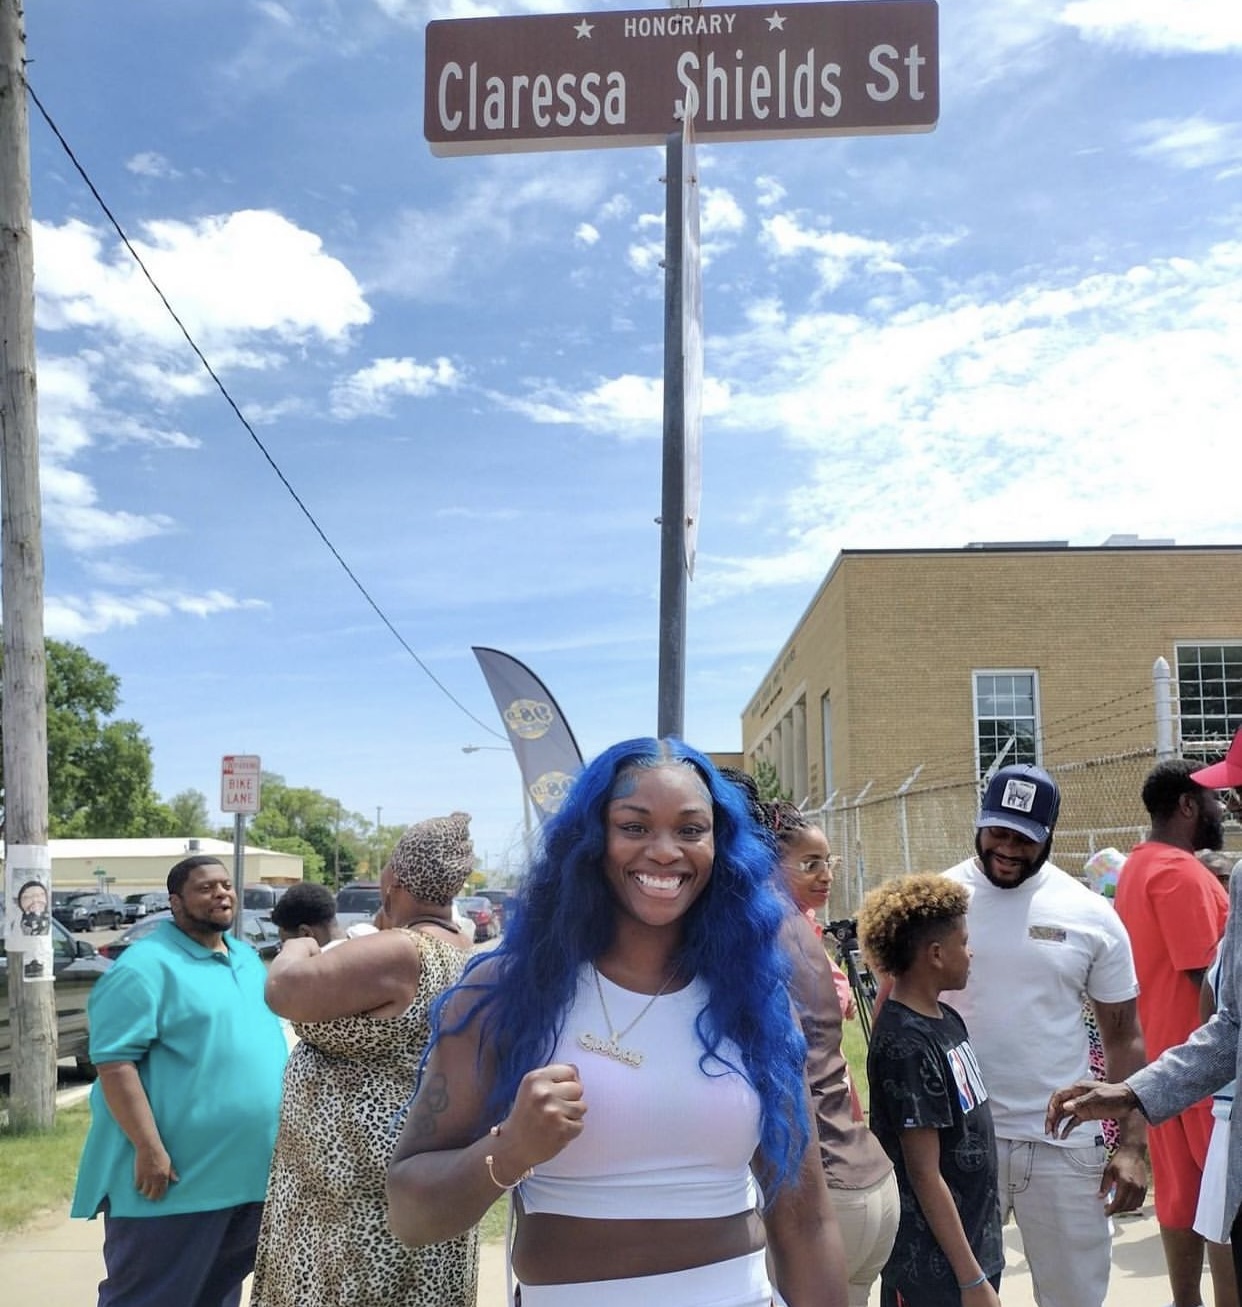 Claressa Shields ahora tiene su propia calle 